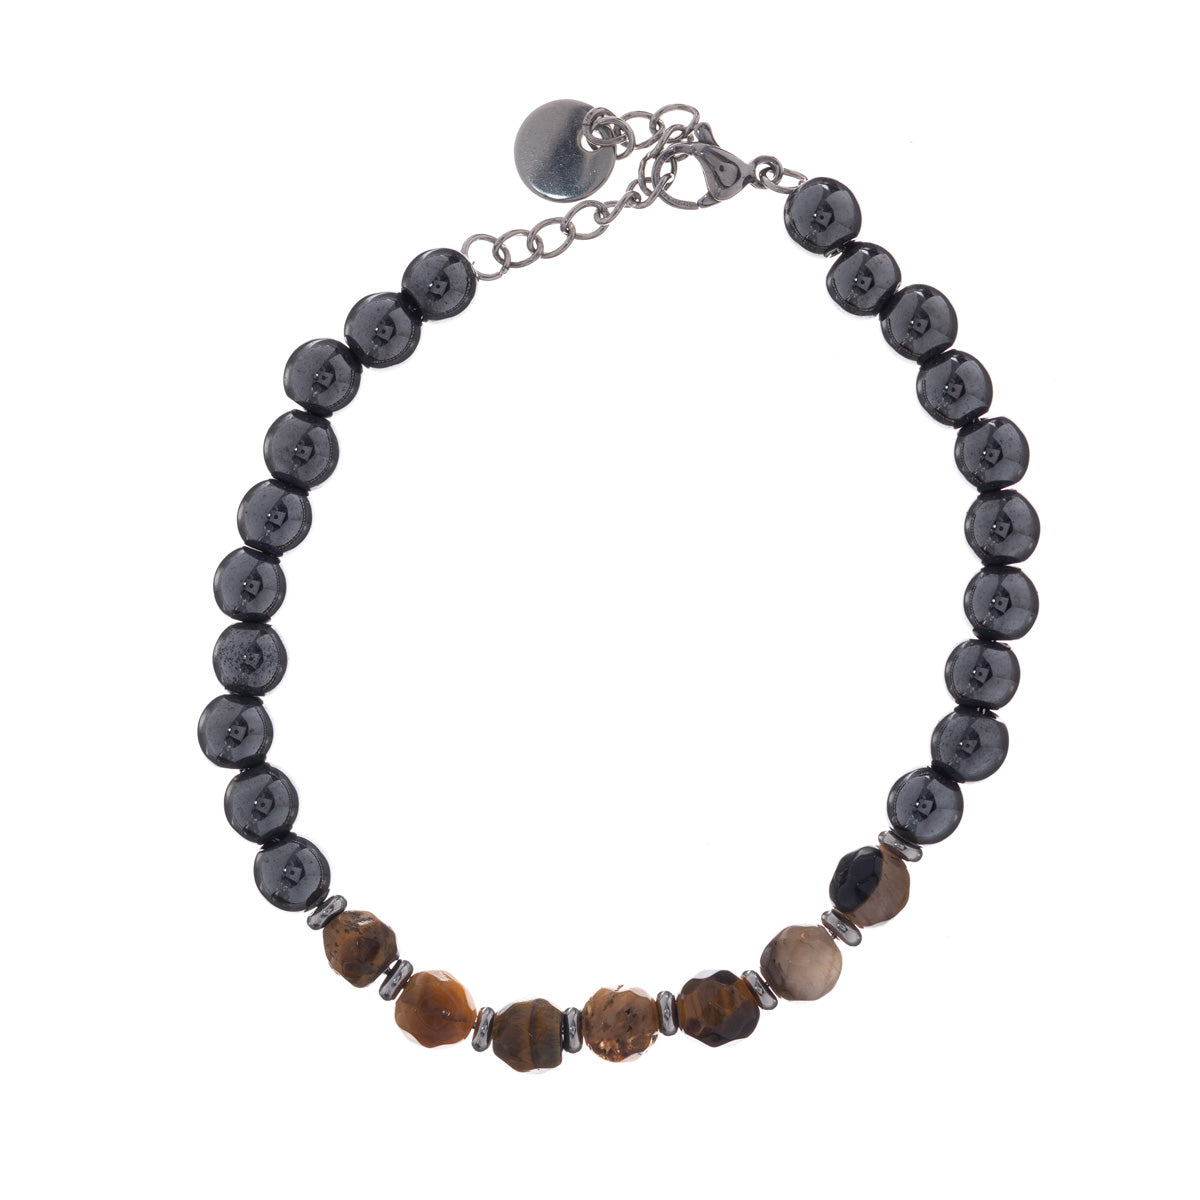 Stone beads steel bracelet